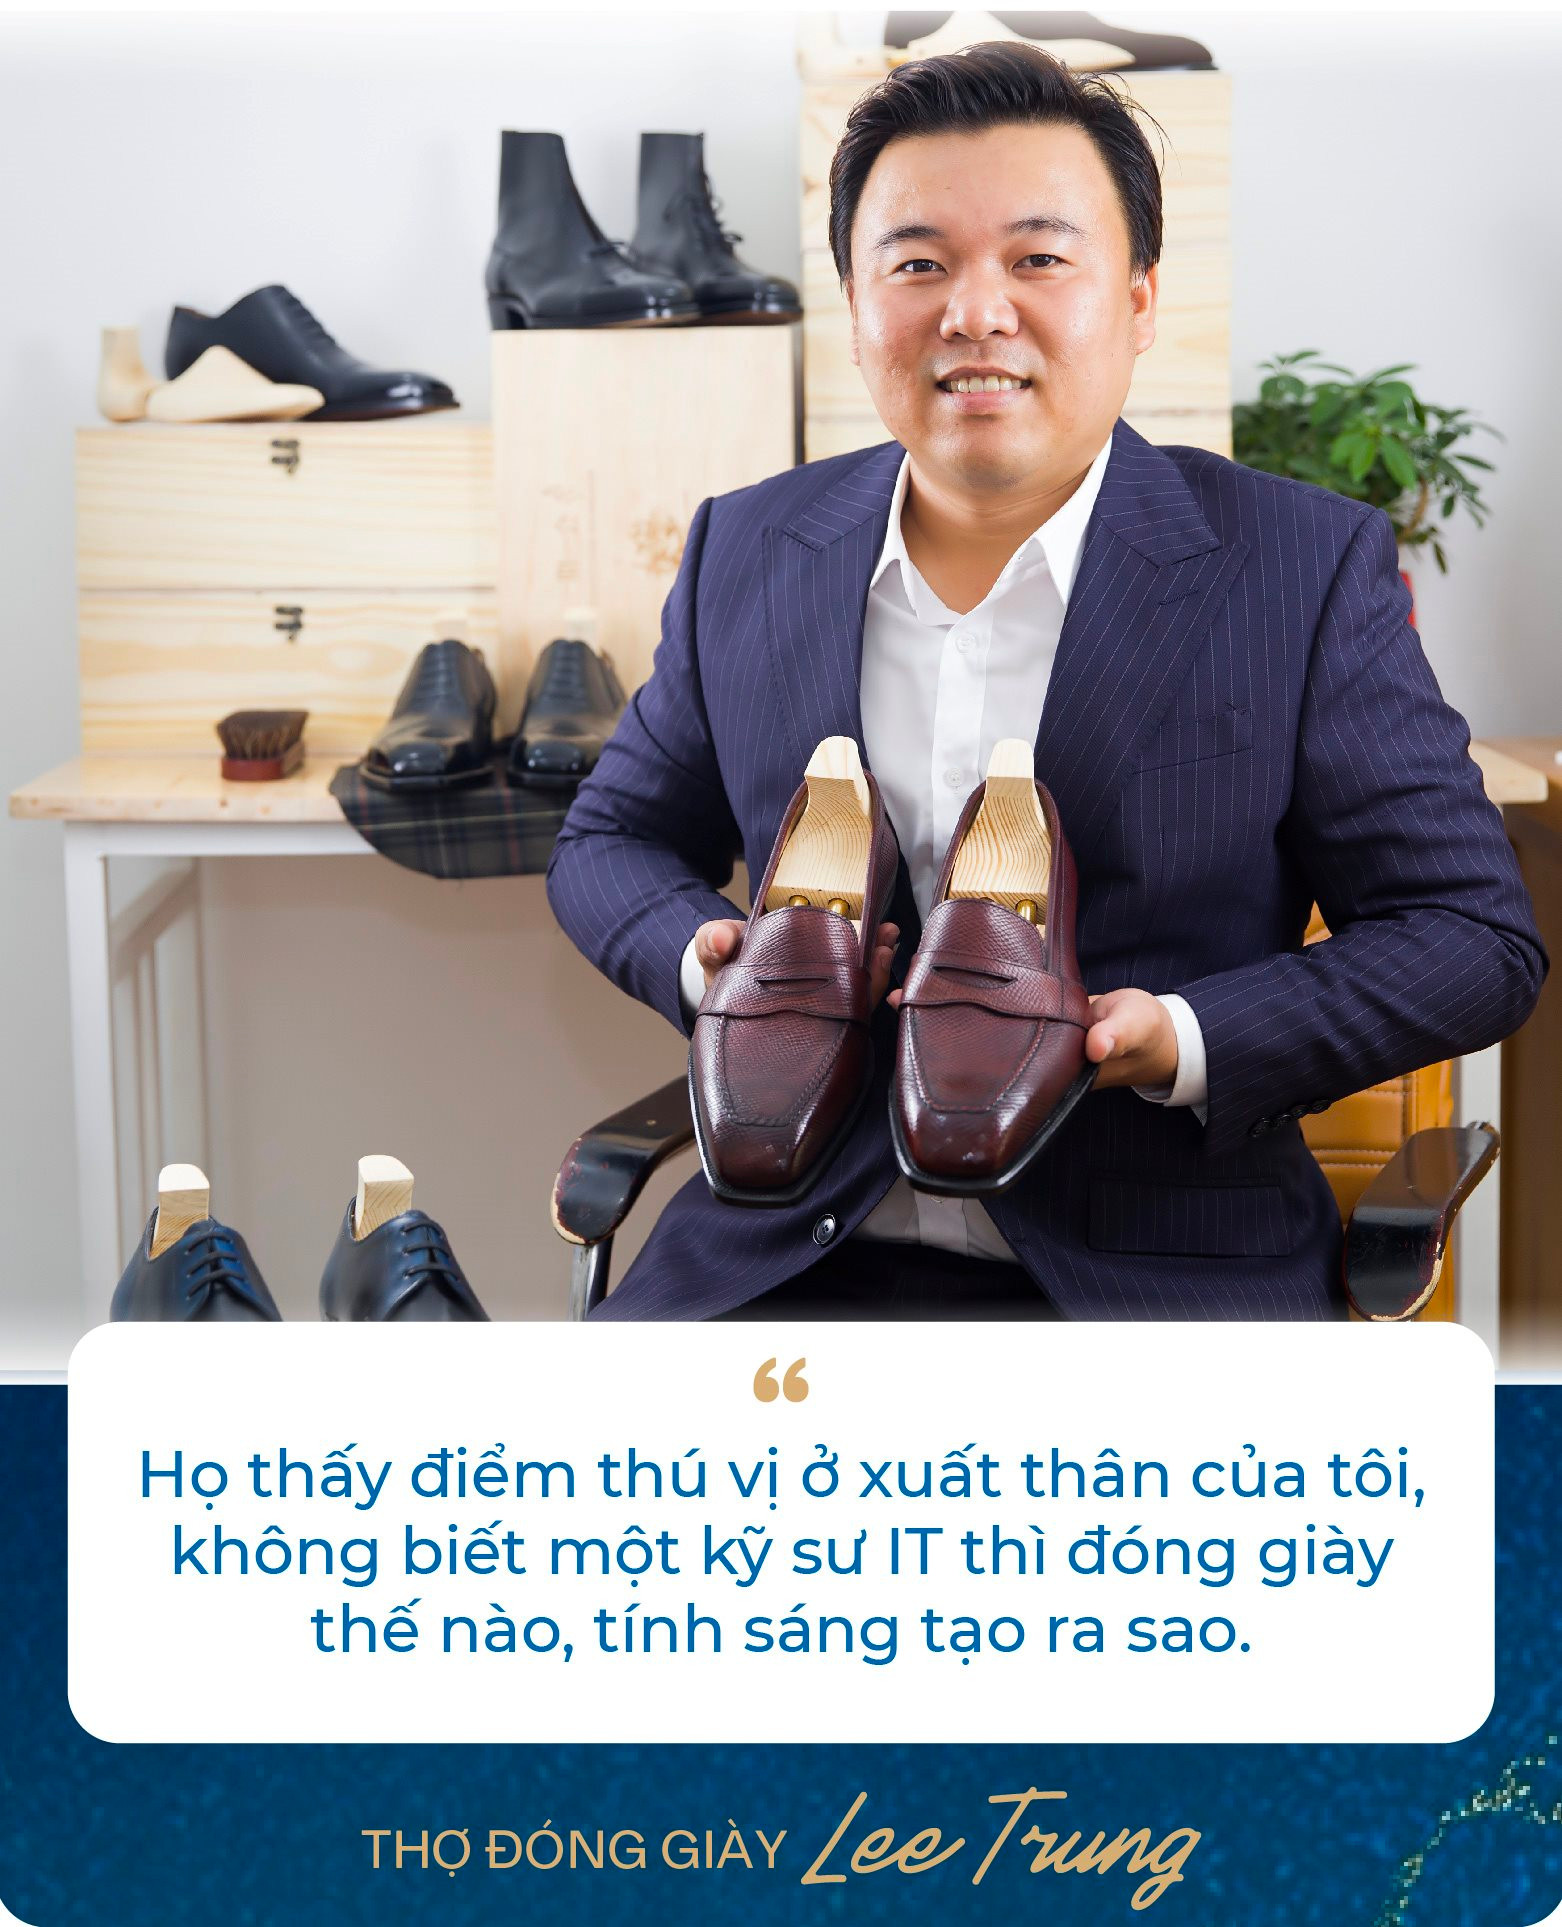 Chàng trai bỏ việc kỹ sư lương nghìn USD để làm thợ đóng giày: Không quảng cáo rầm rộ, giày giá nghìn USD vẫn “đắt hàng”, khẳng định làm vì đam mê - Ảnh 10.